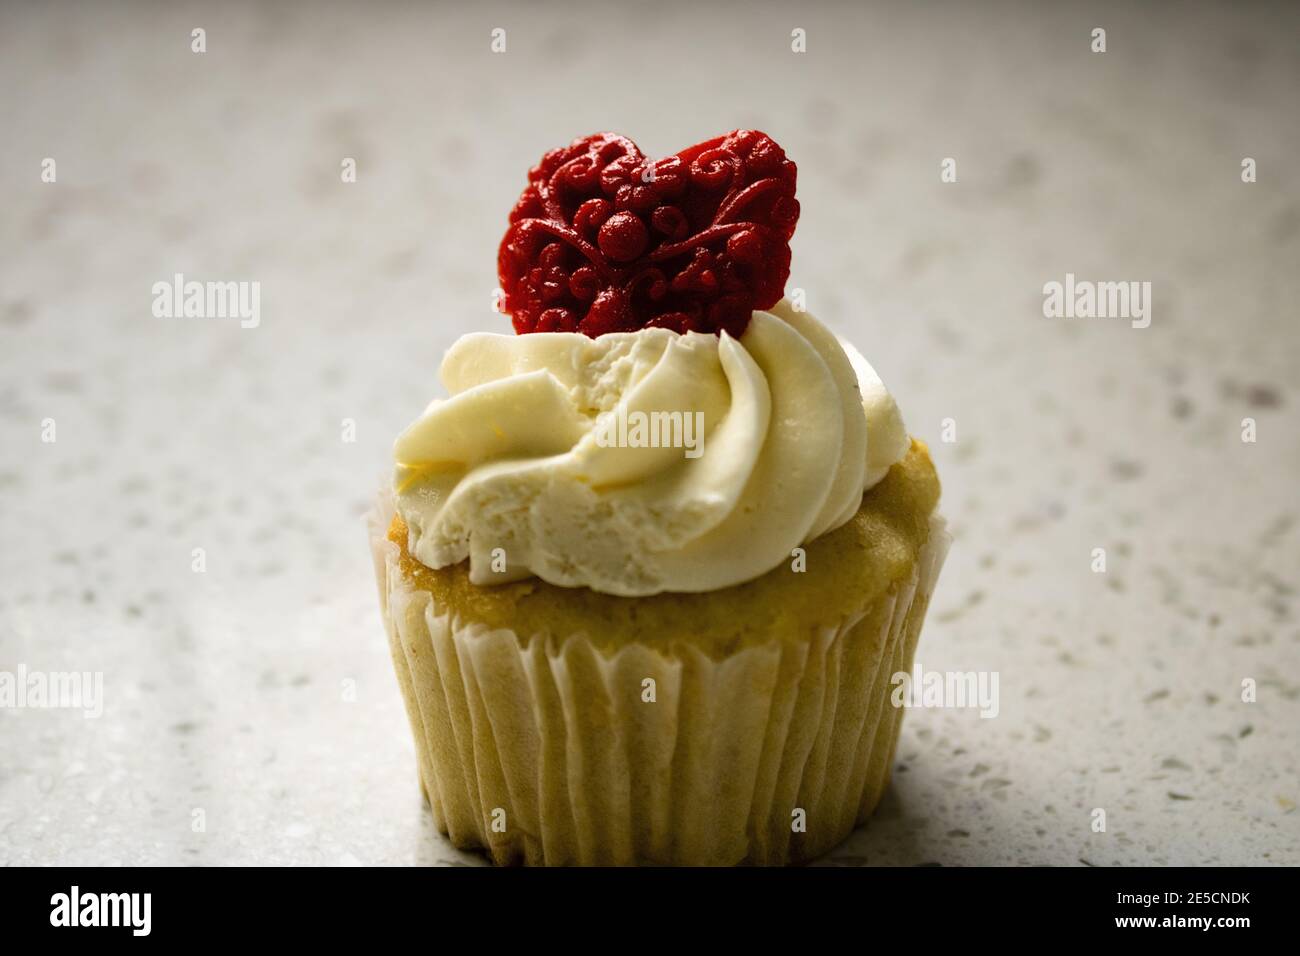 Primo piano di cupcake alla vaniglia con glassa di panna bianca cuore rosso fondente modellato per il giorno di san valentino Foto Stock